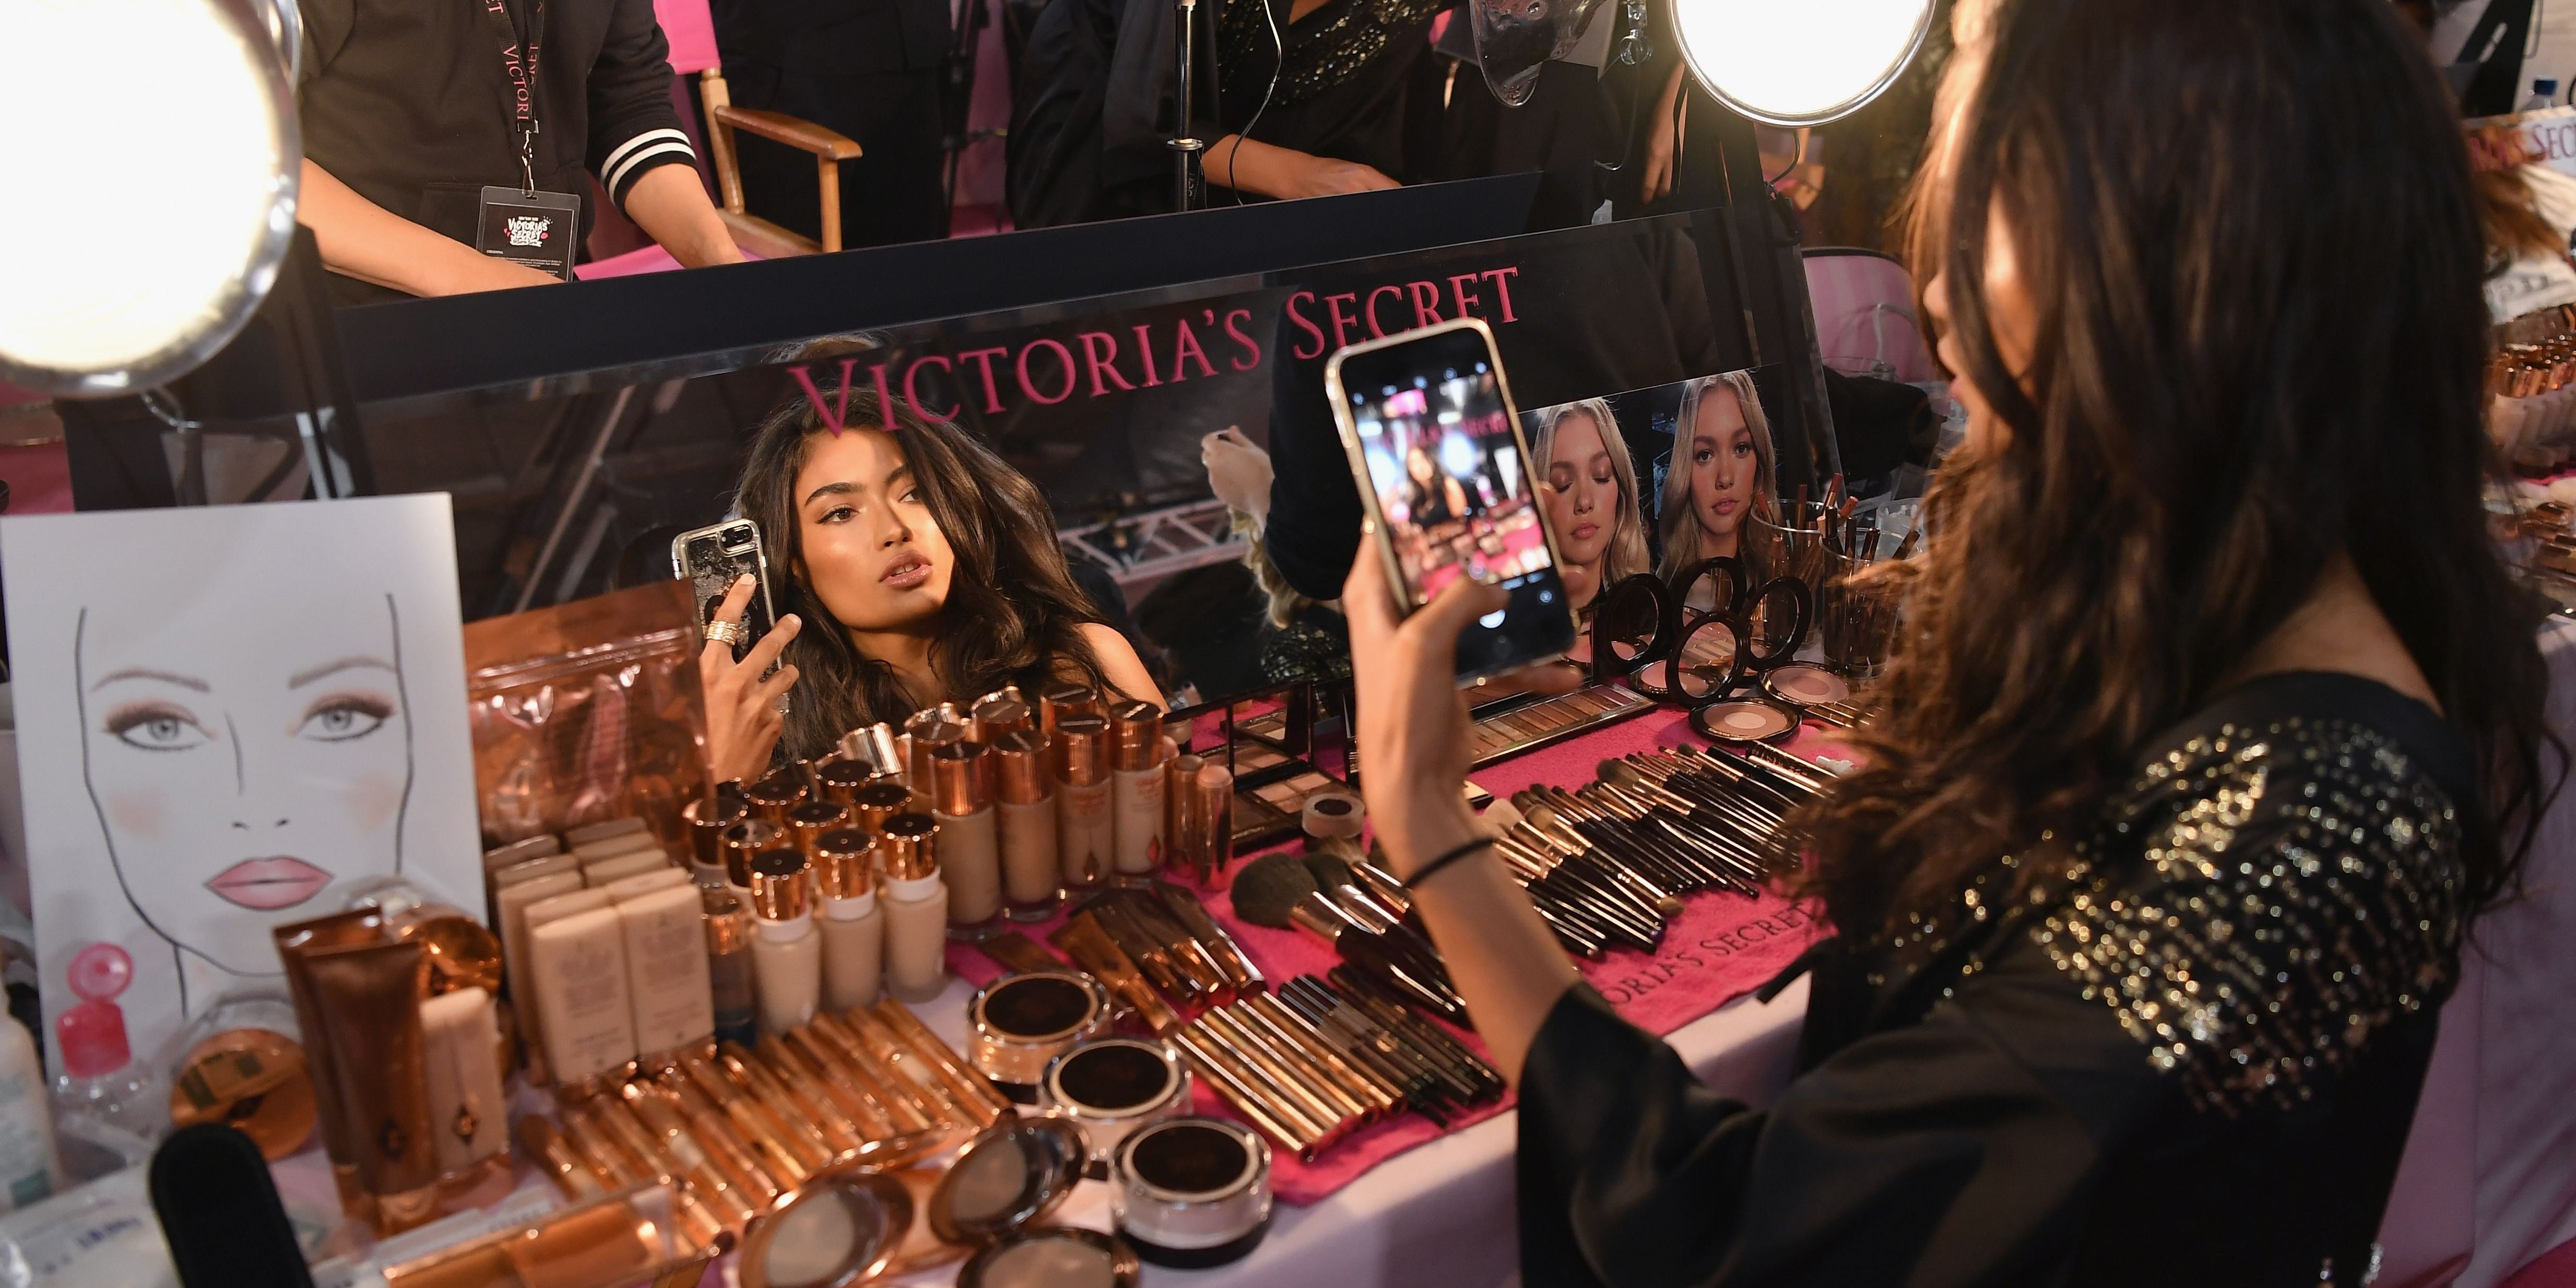 What Makeup Do the Victoria's Secret Models Wear?